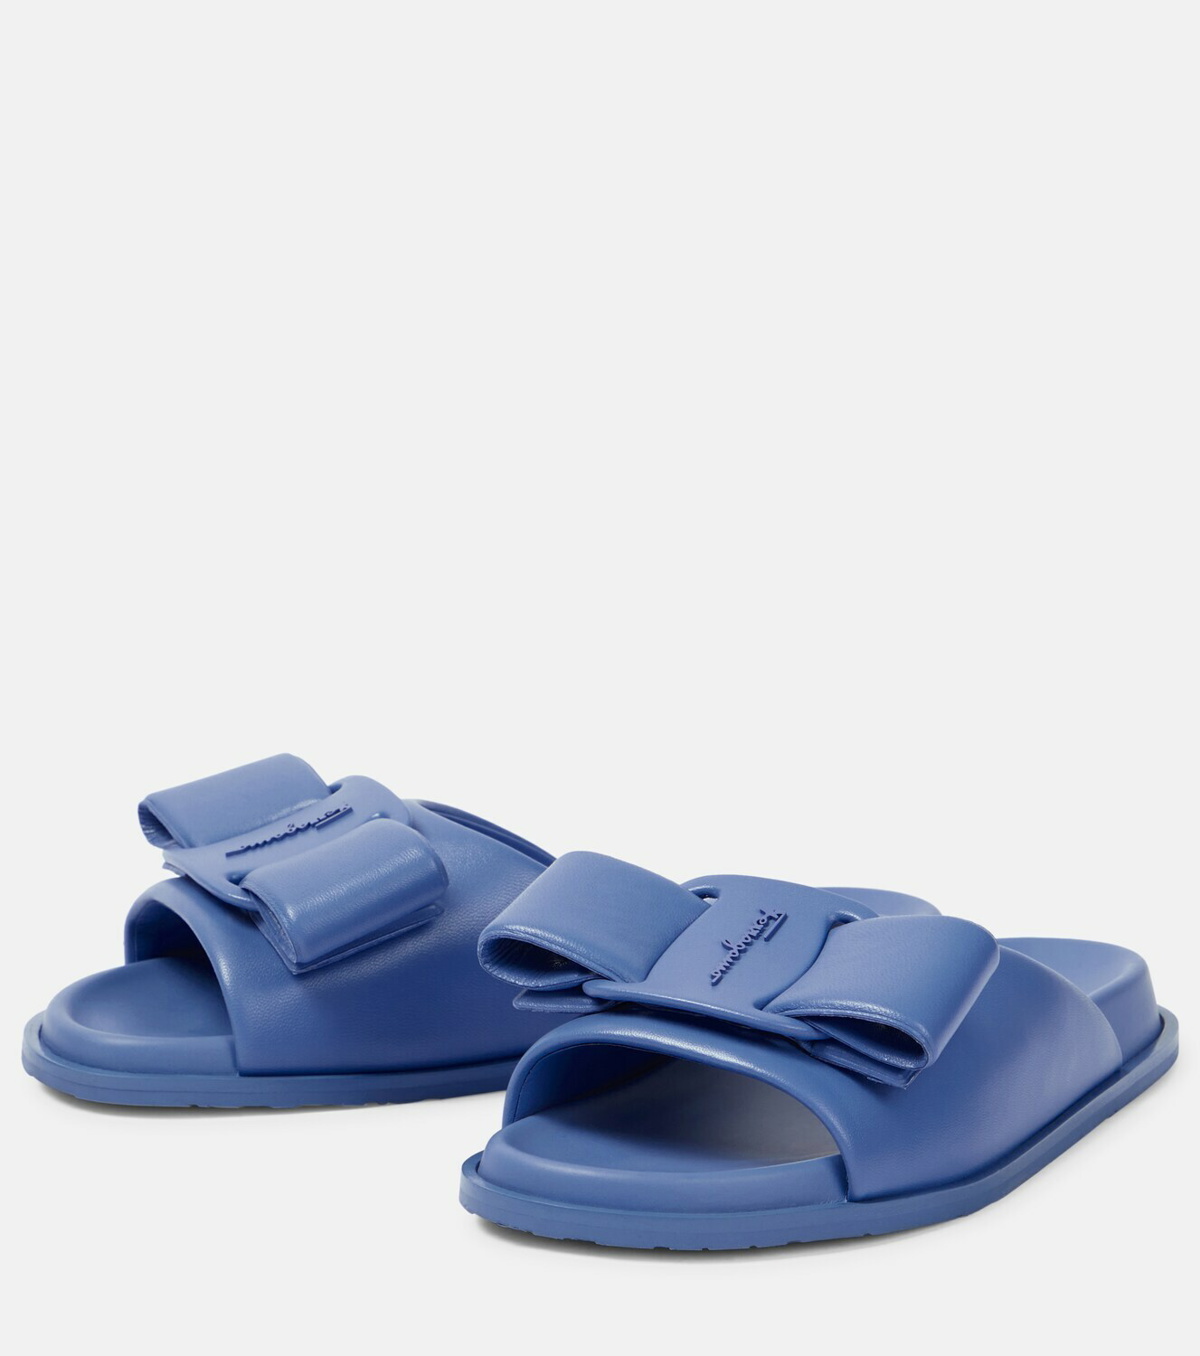 Buy Ferragamo Blue Gancini Groovy Pool Slides